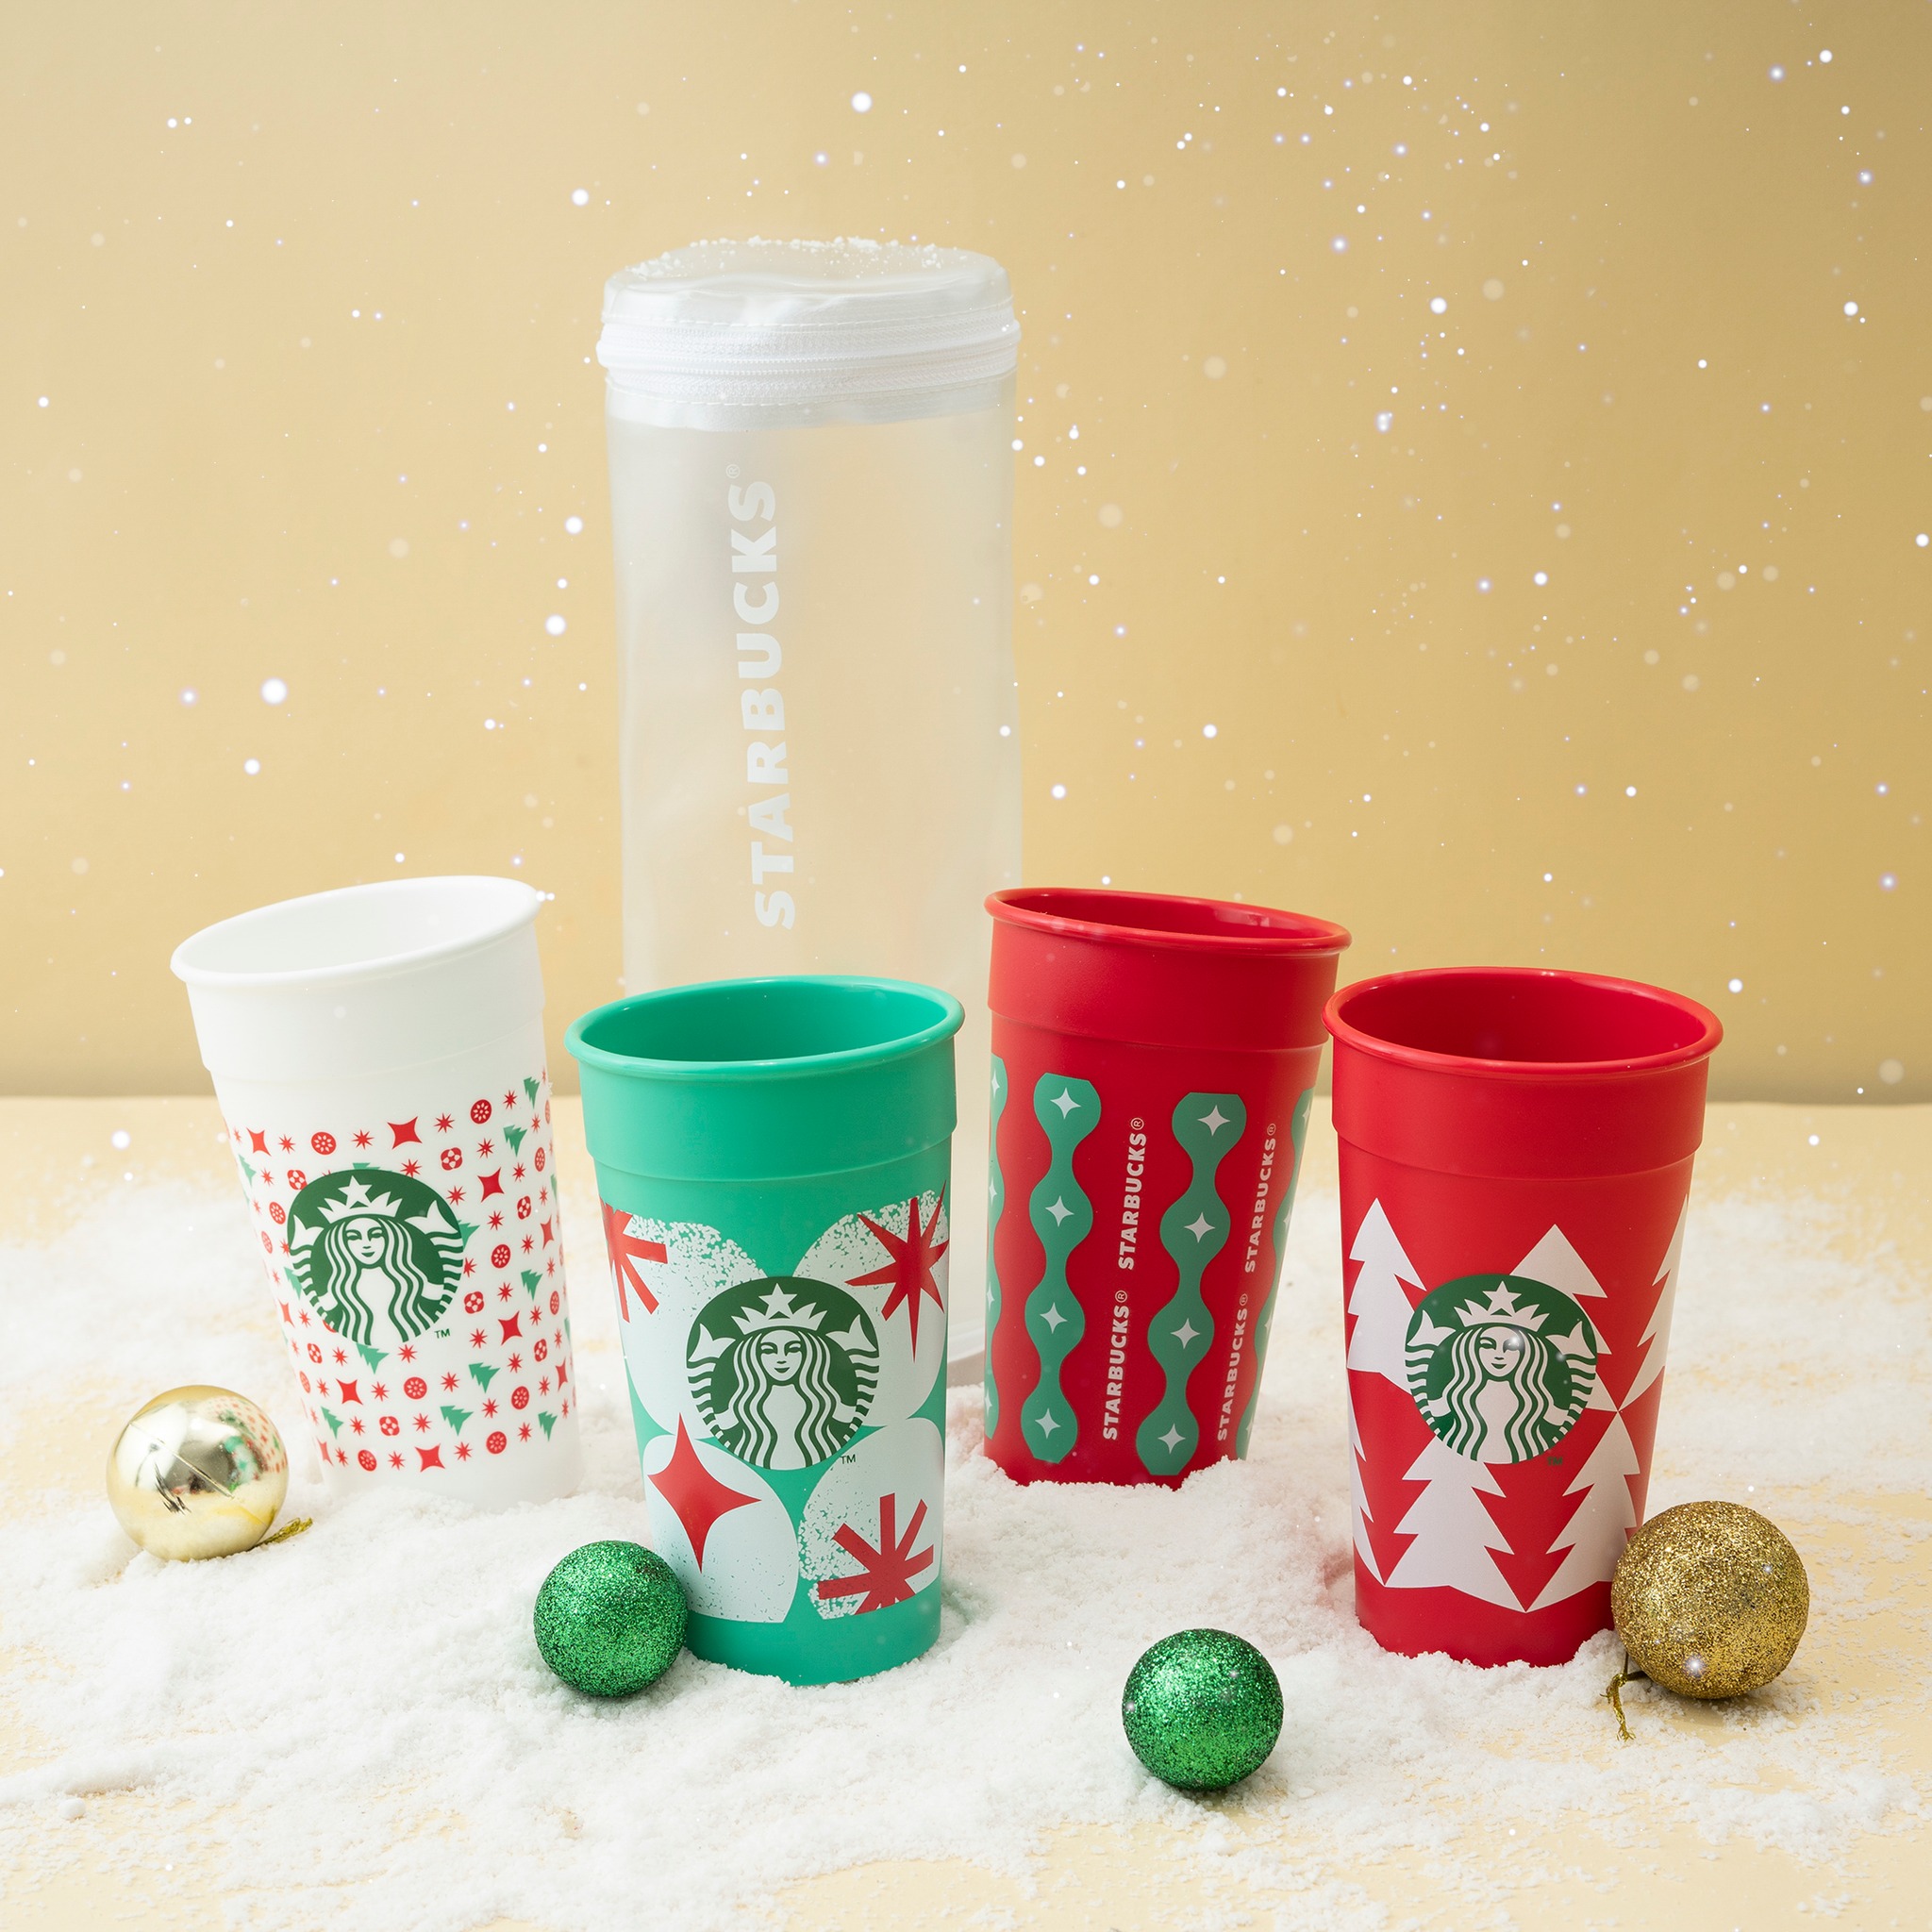 Bộ sưu tập Reusable Cups của Starbucks